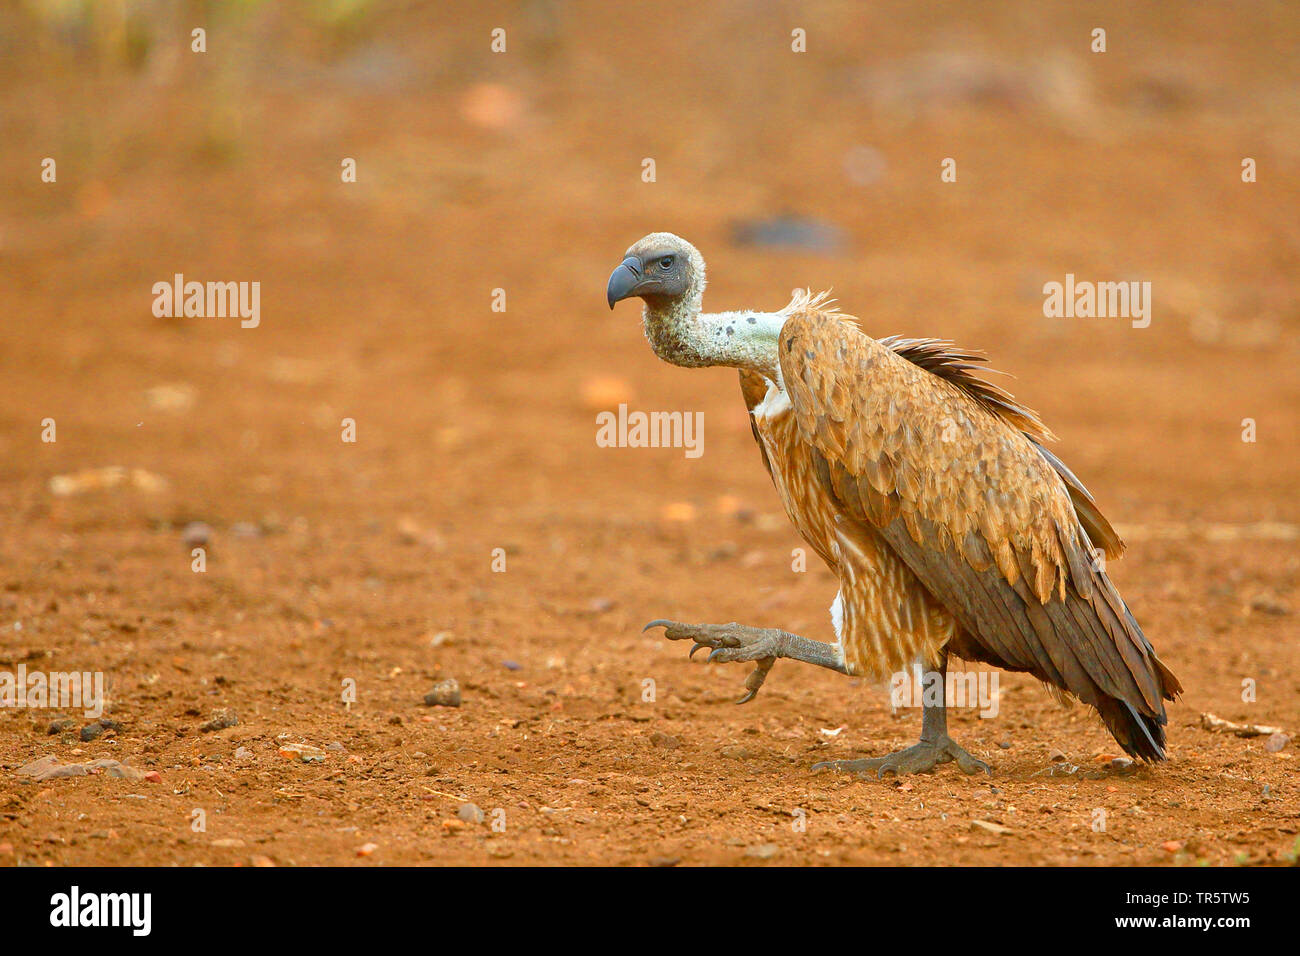 Afrikanische weiß-backed Vulture (Tylose in Africanus), Wandern auf dem Boden, Seitenansicht, Südafrika, Mpumalanga, Kruger National Park Stockfoto